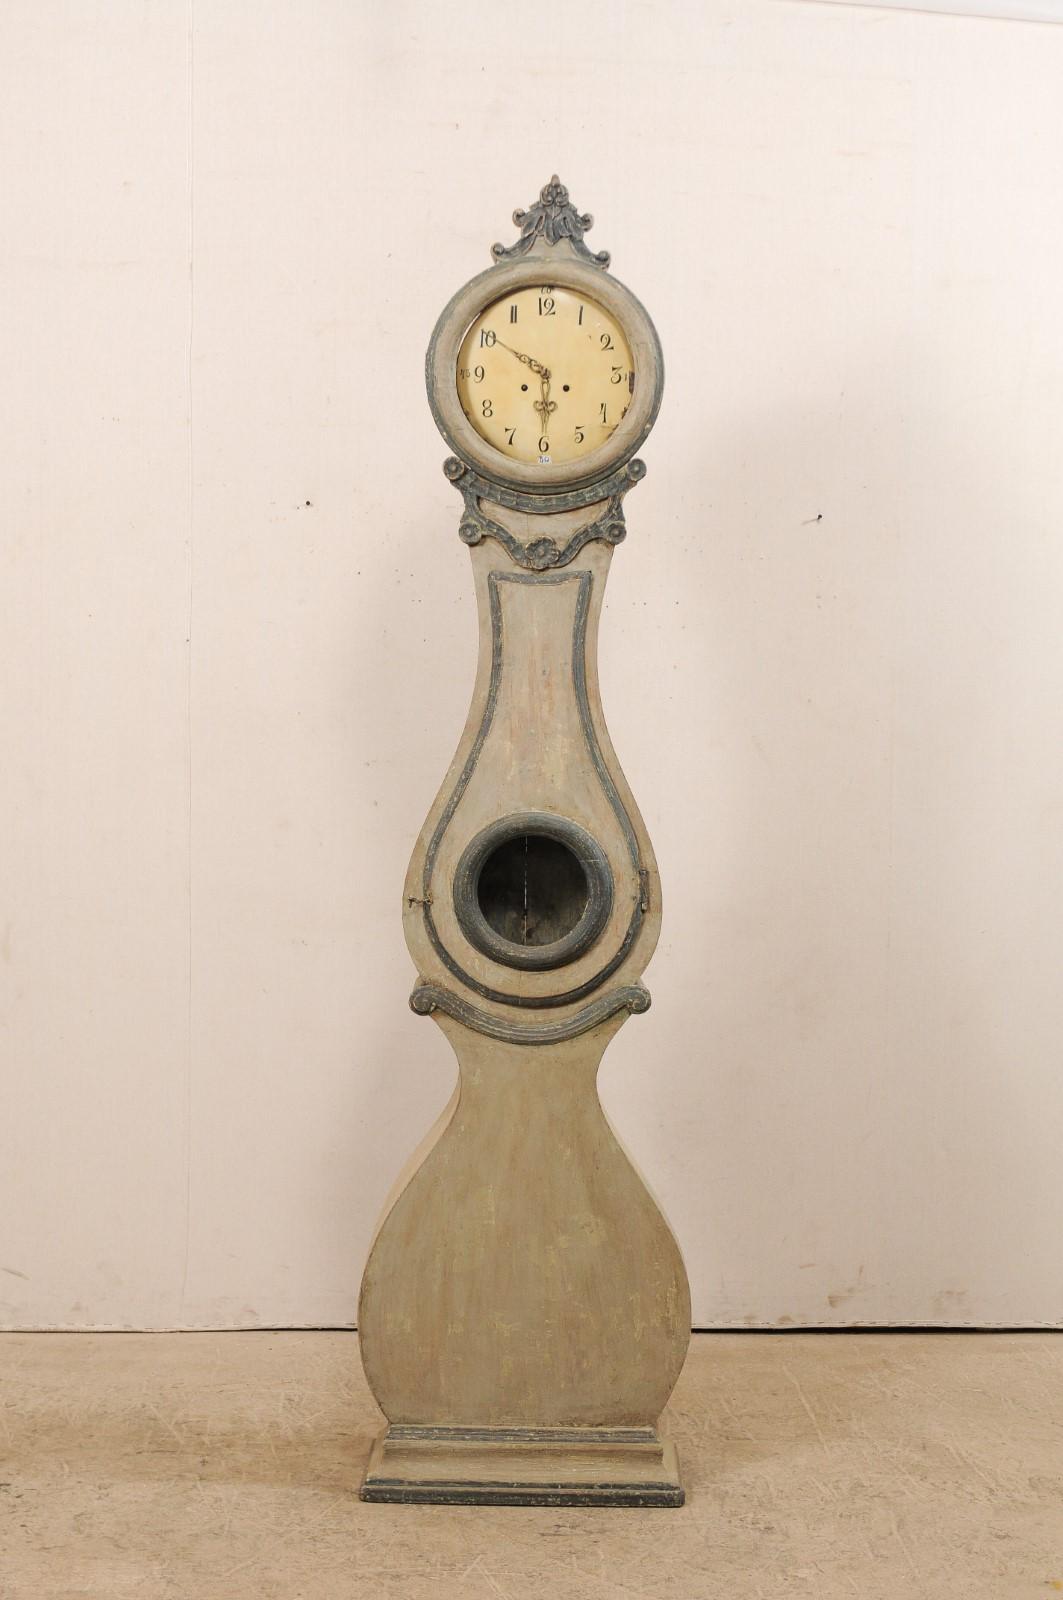 Horloge suédoise Fryksdahl du 19ème siècle avec un corps galbé et une couronne sculptée. Cette horloge antique Fryksdahl de Suède possède de fabuleuses garnitures qui mettent en valeur et accentuent cette horloge aux formes harmonieuses. L'horloge